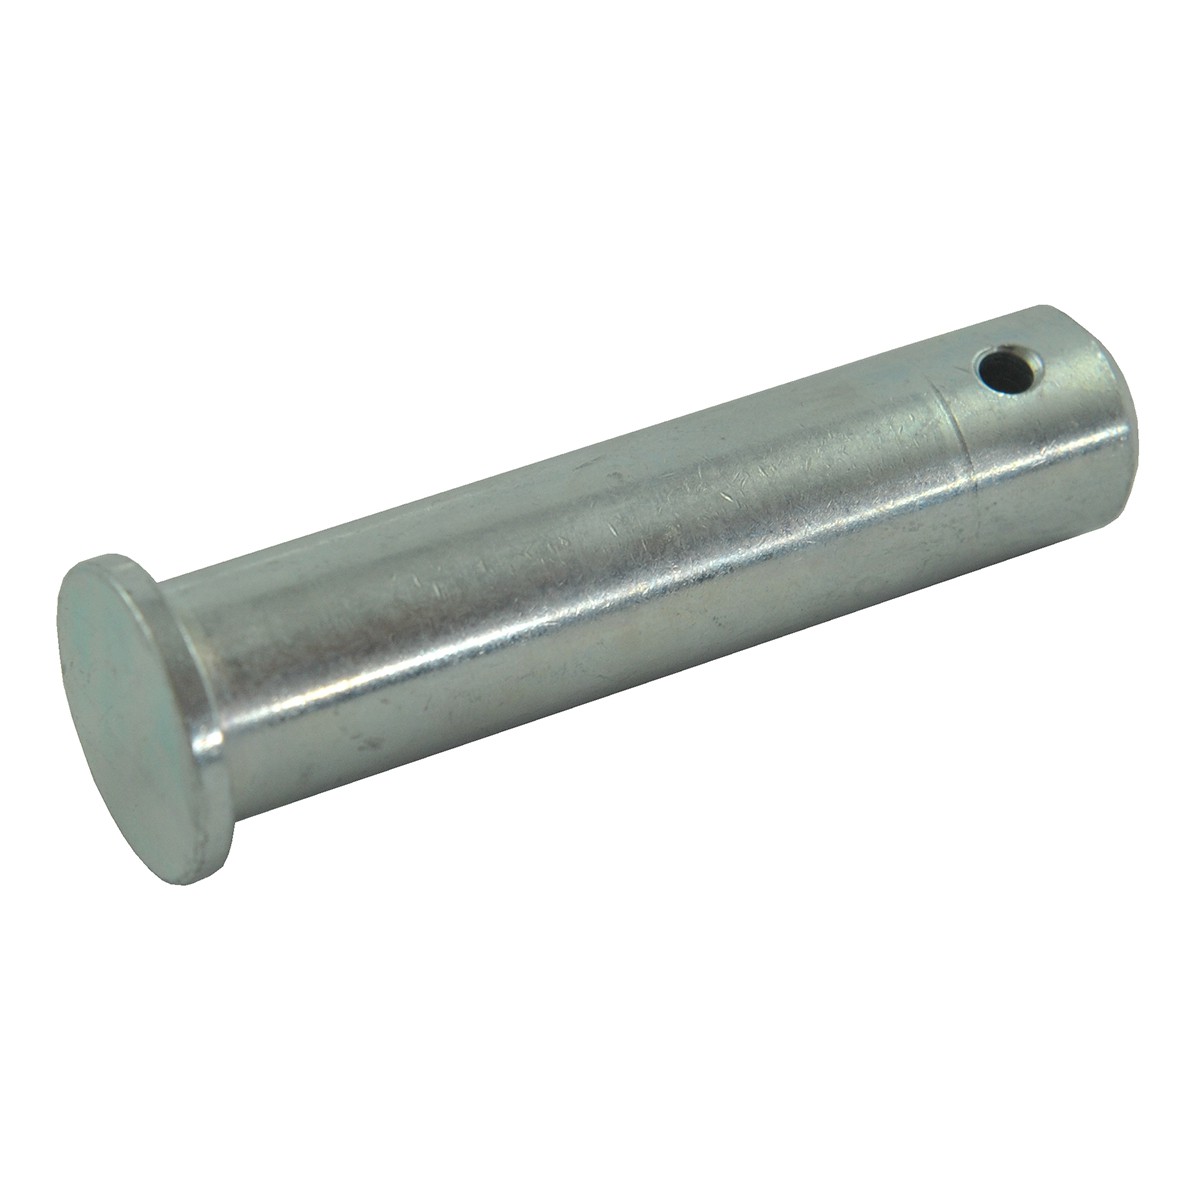 Three-point hitch pin / 19 x 70 mm / LS MT3.50 / LS MT3.60 / TRG896 / 40251033